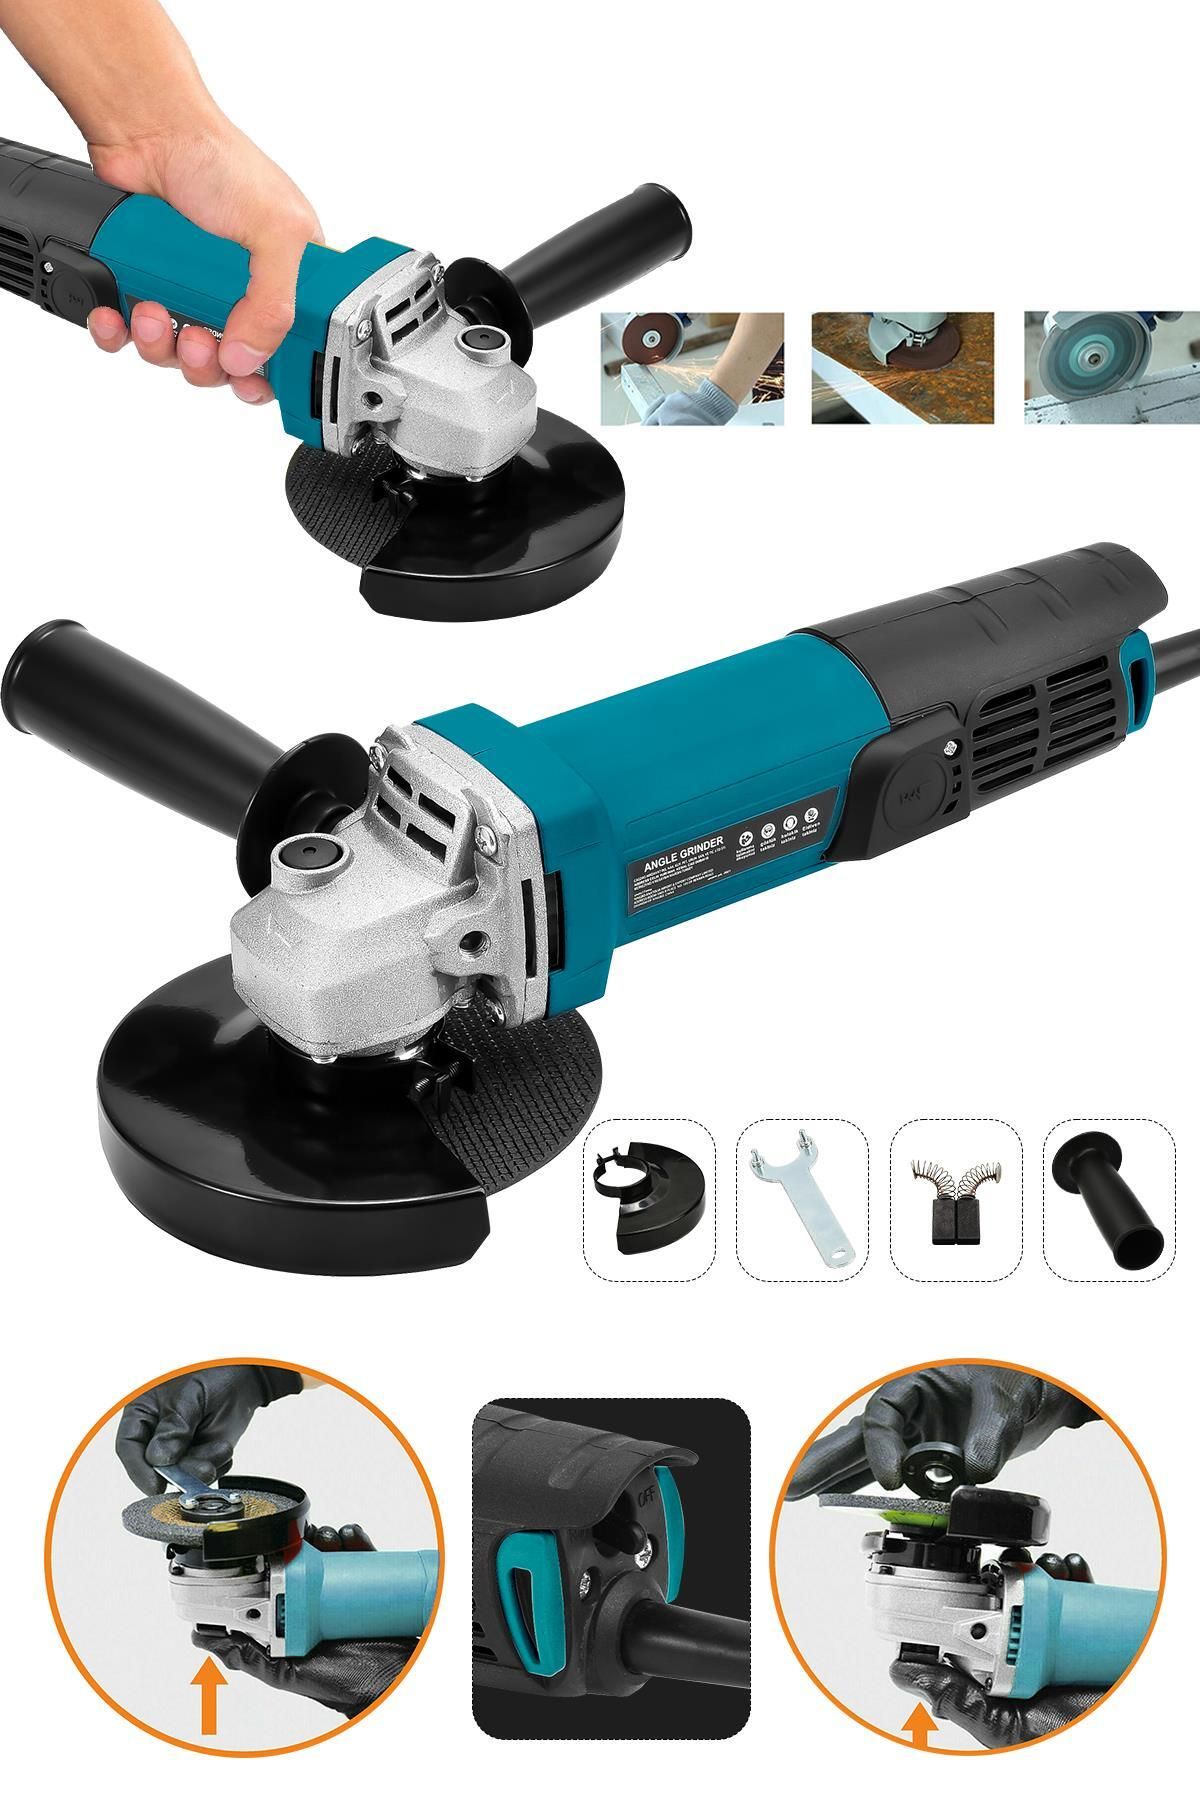 ASSUR Jetta Power Tools Spiral Taşlama Makinesi Devirsiz Mavi 125 Mm 550 W